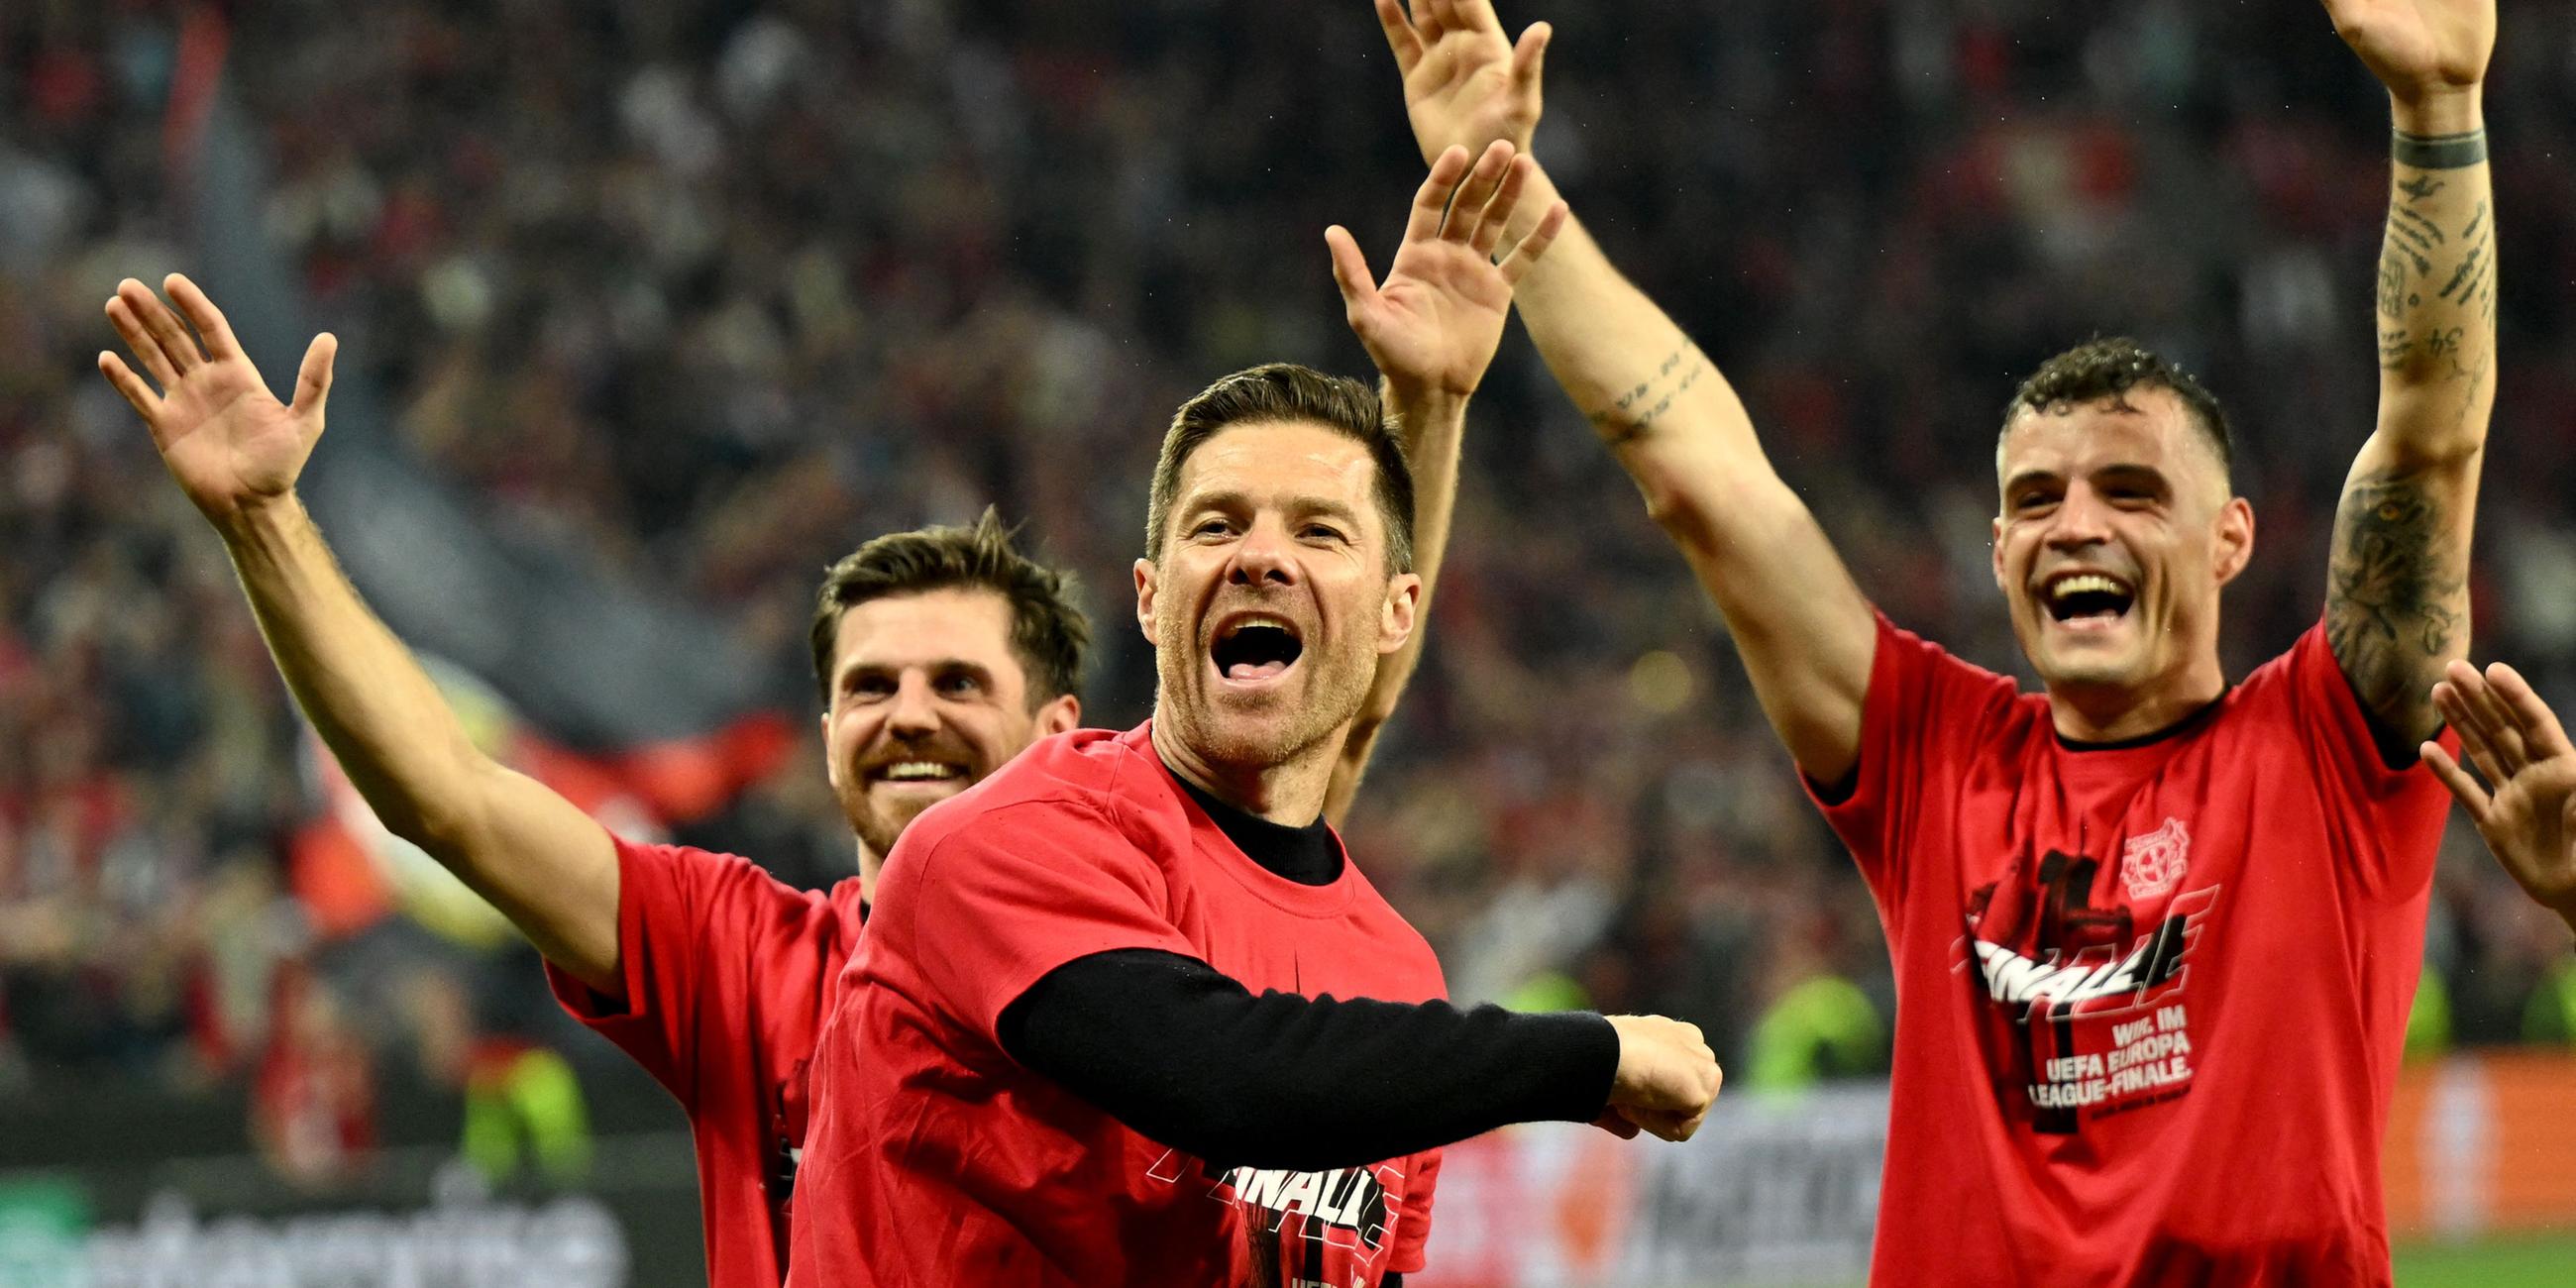 Drei Männer freuen sich auf einem Fußballplatz über den Einzug in Europa-League-Finale. Sie reißen die Arme in den Himmel.